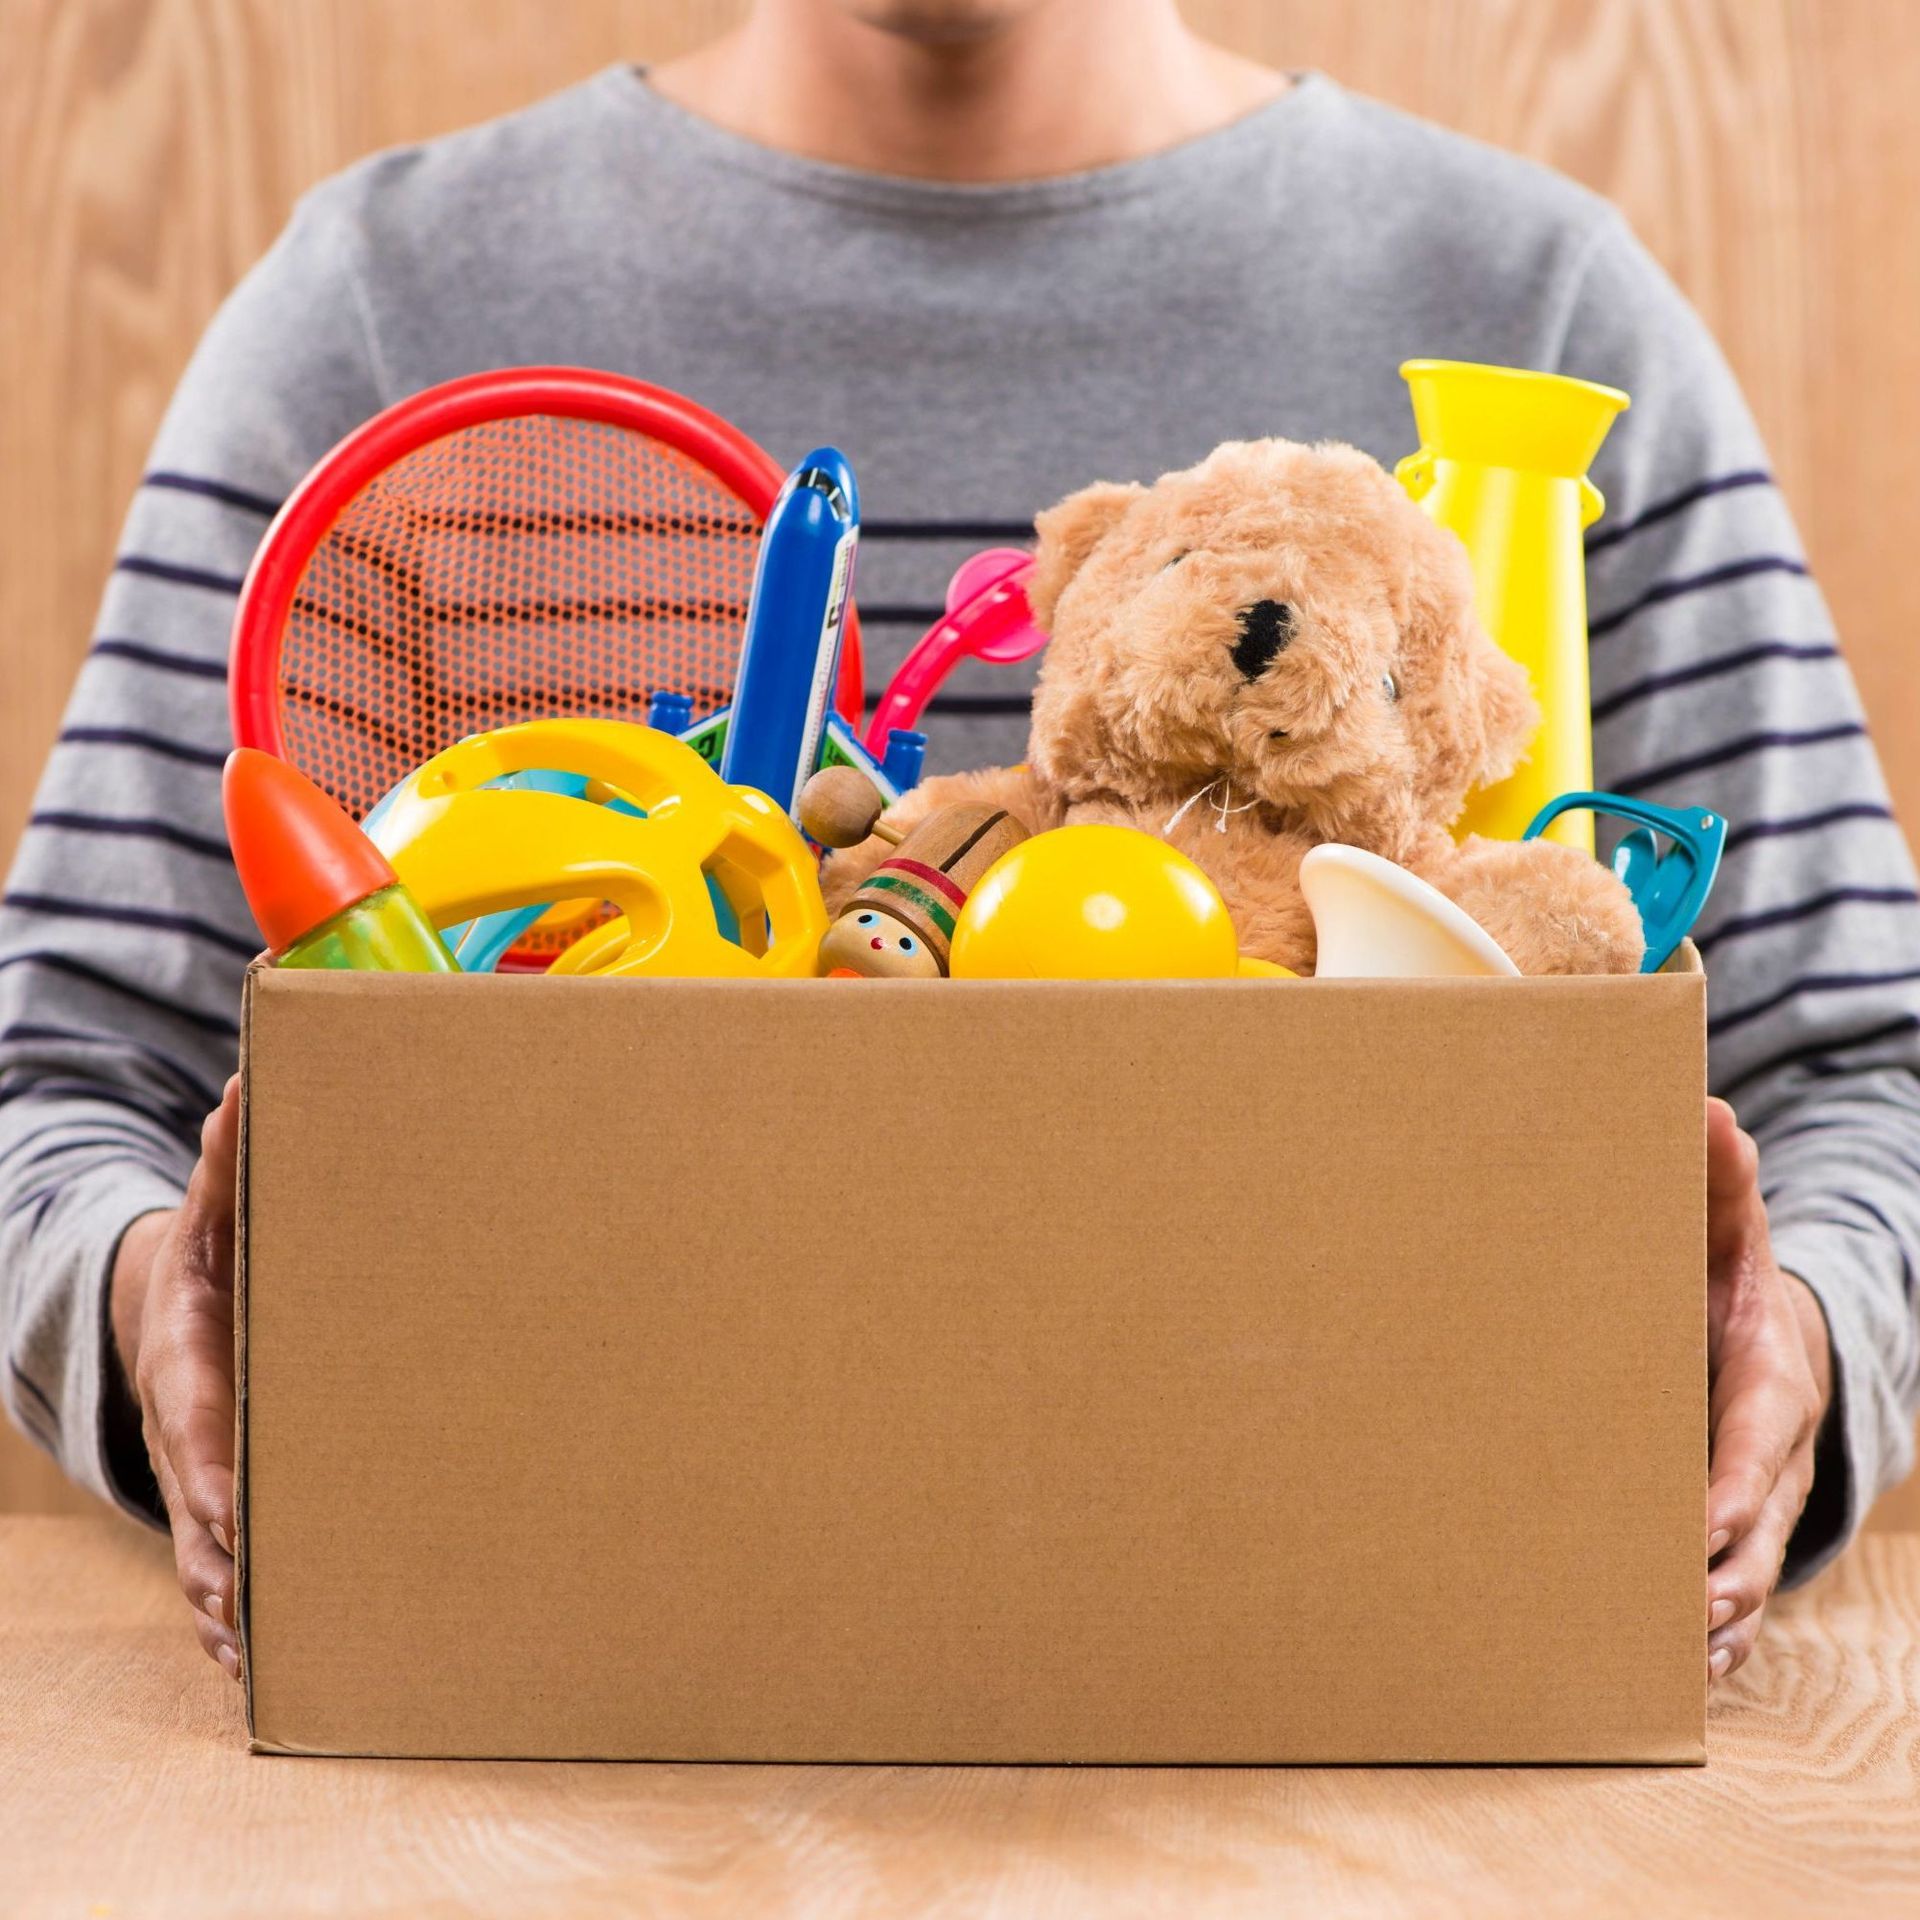 À qui donner les jouets dont son enfant ne se sert plus? – L'Express